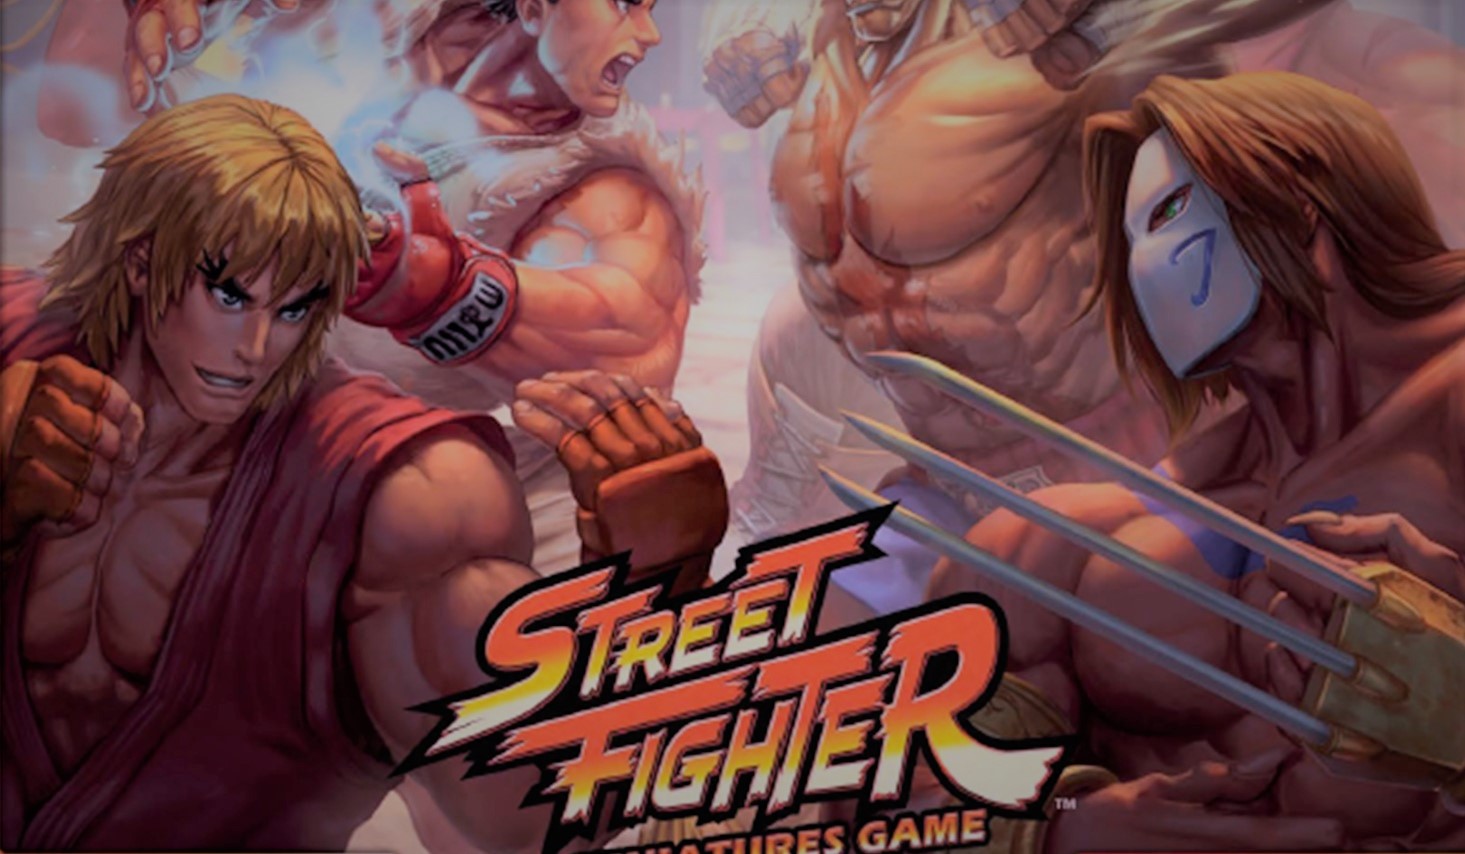 Hadouken! Yeni Street Fighter Oyunu Masaya Çıkacak!